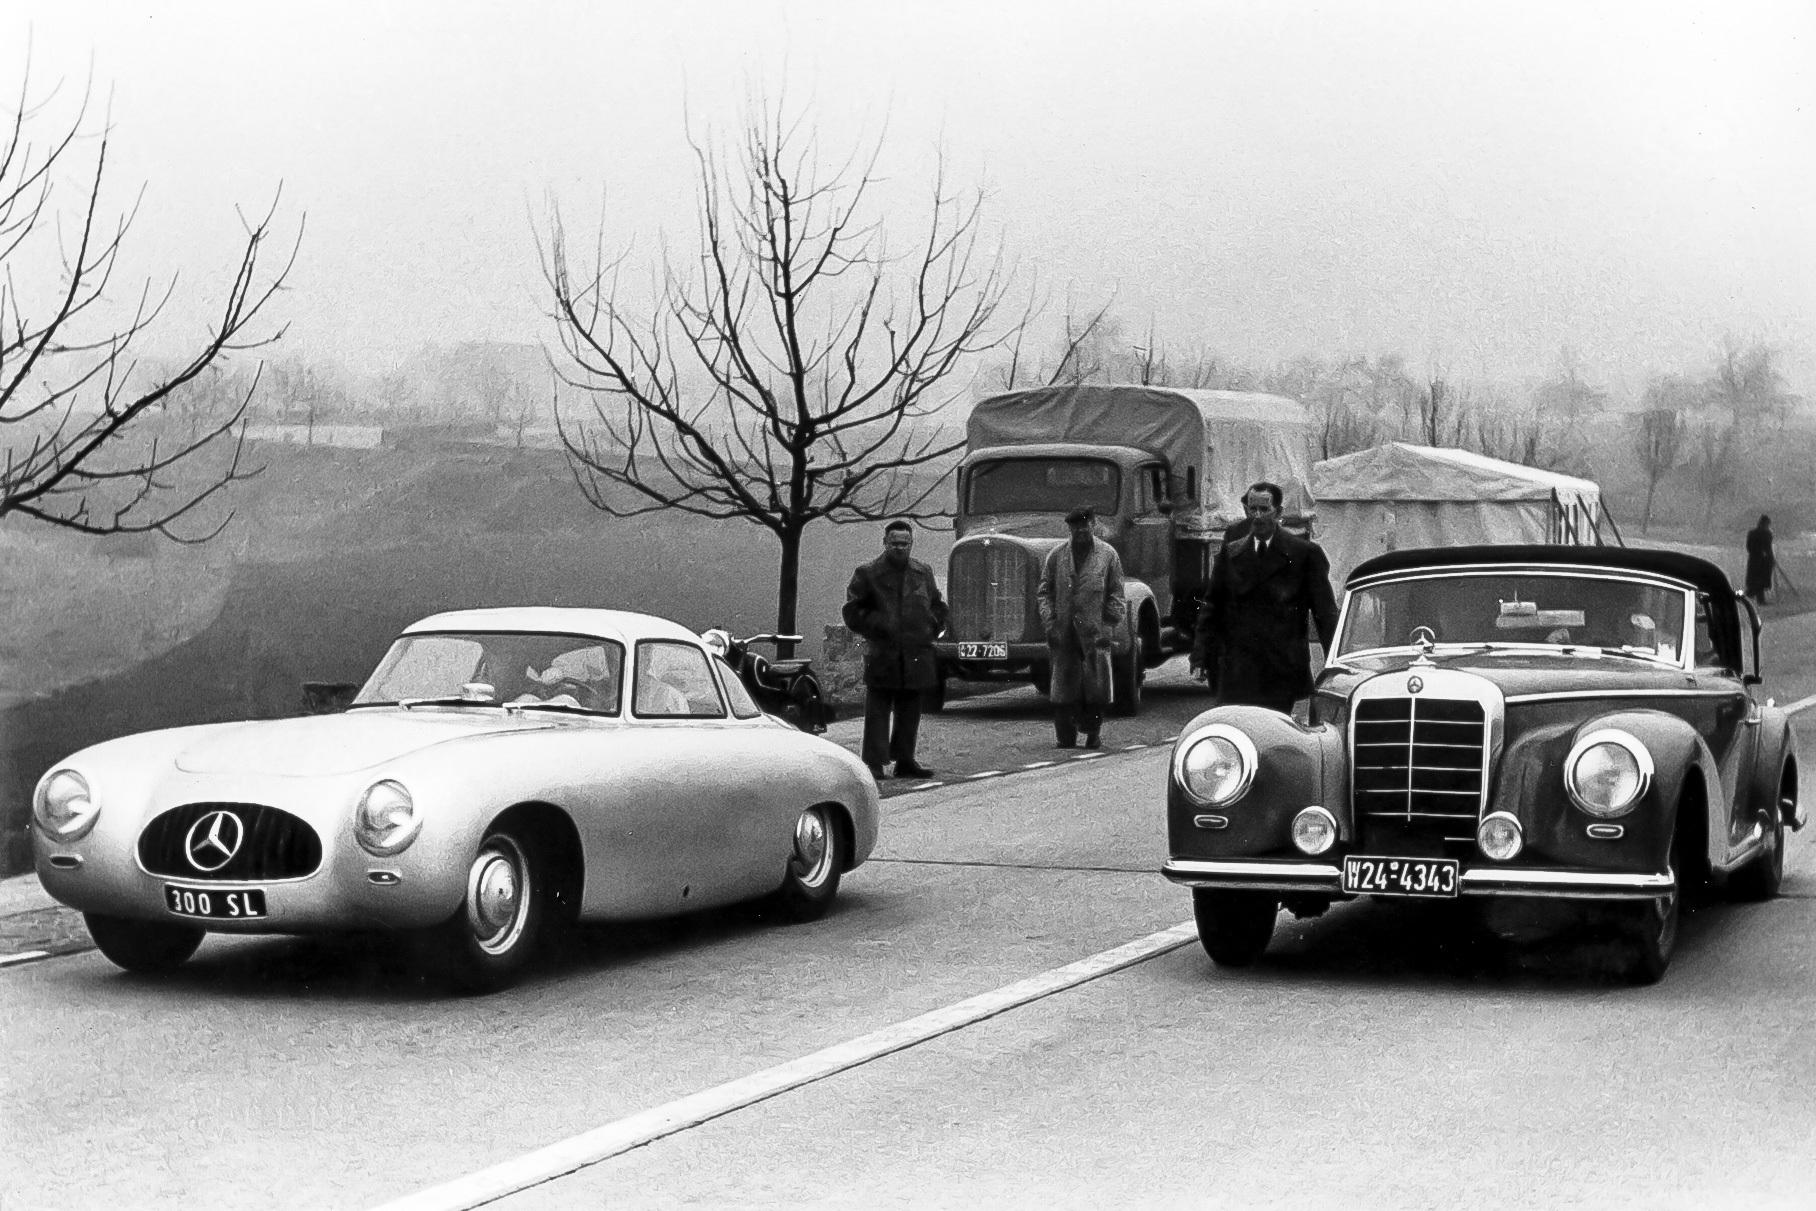 Тот самый памятный день 12 марта 1952 года — новенький W194 представляют прессе на обочине автобана близ Штутгарта. Справа стоит донор – Mercedes-Benz Typ 300 в кузове кабриолет (W188). Сложно поверить, что два автомобиля — ближайшие родственники.